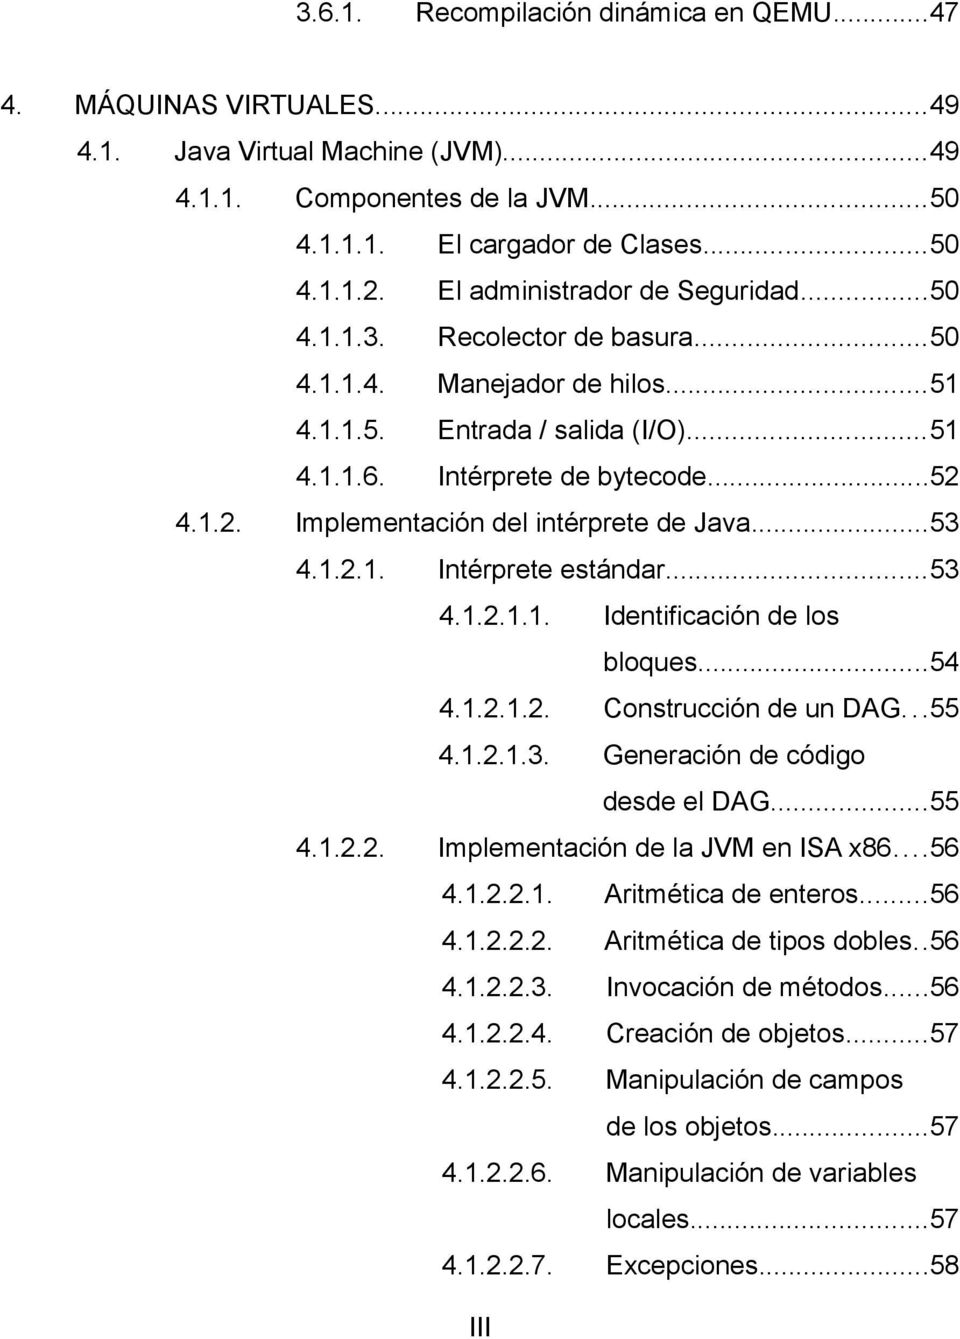 4.1.2. Implementación del intérprete de Java...53 4.1.2.1. Intérprete estándar...53 4.1.2.1.1. Identificación de los bloques...54 4.1.2.1.2. Construcción de un DAG...55 4.1.2.1.3. Generación de código desde el DAG.